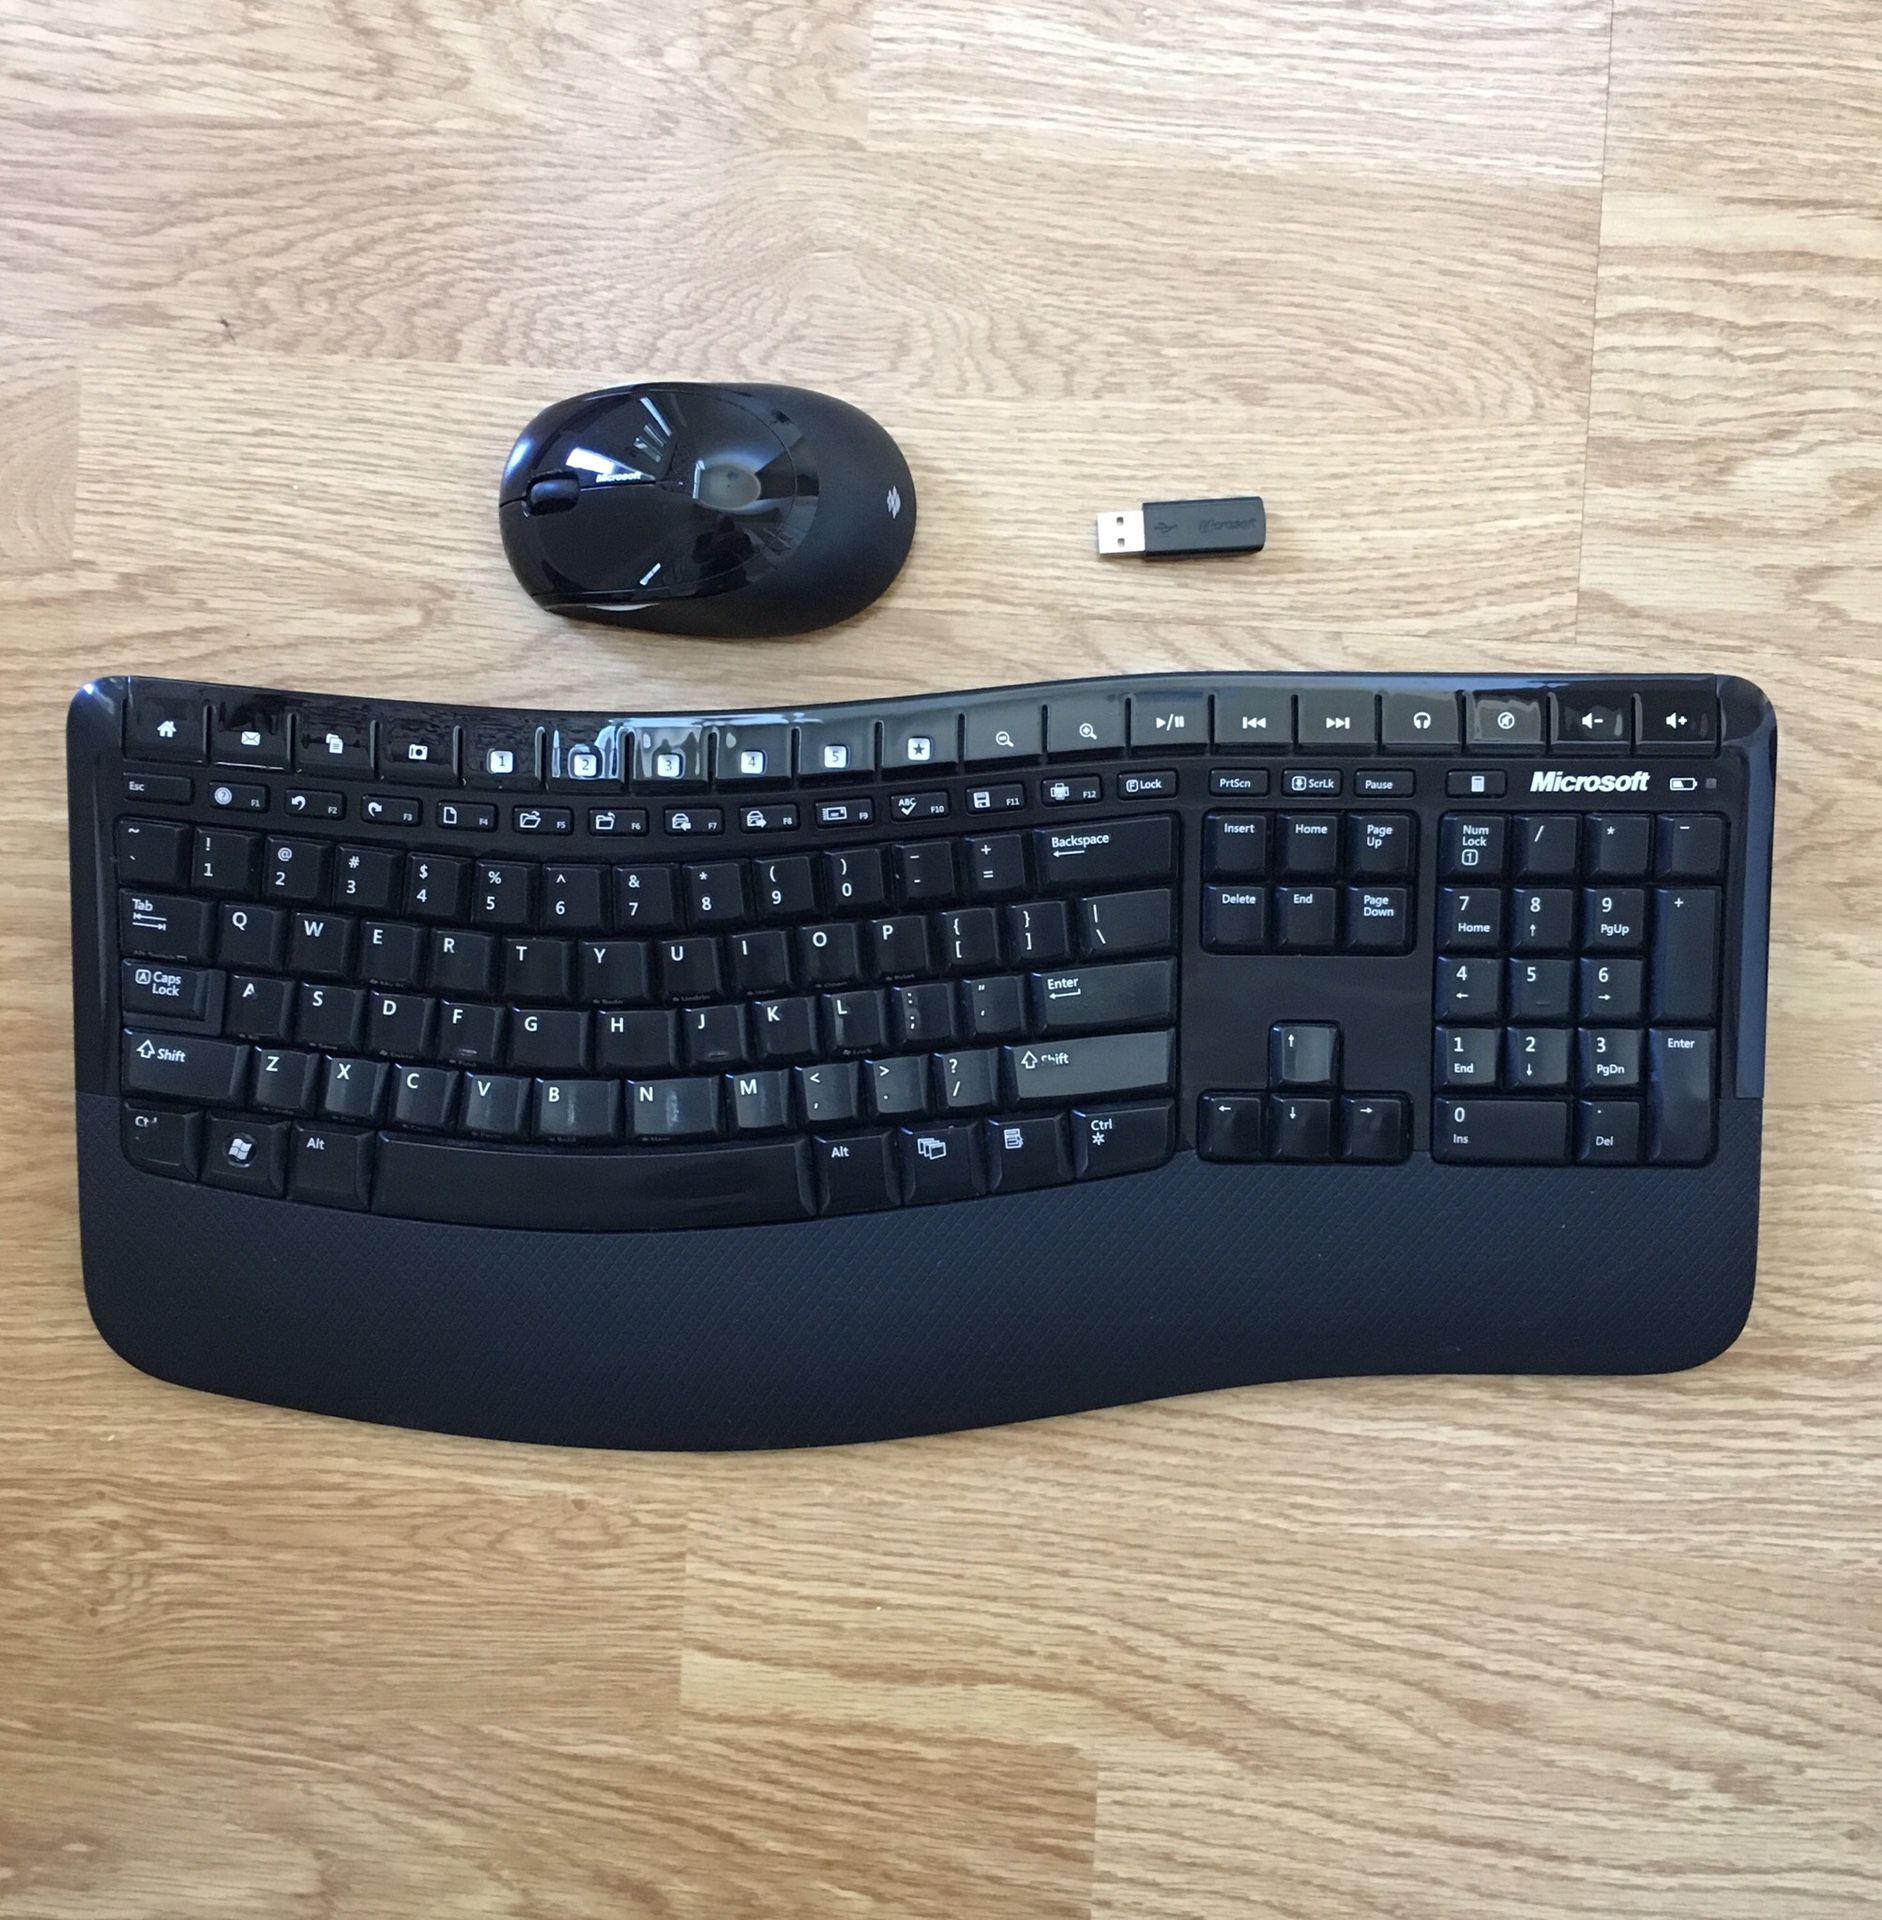 Microsoft Wireless Comfort Keyboard & Mouse 5000